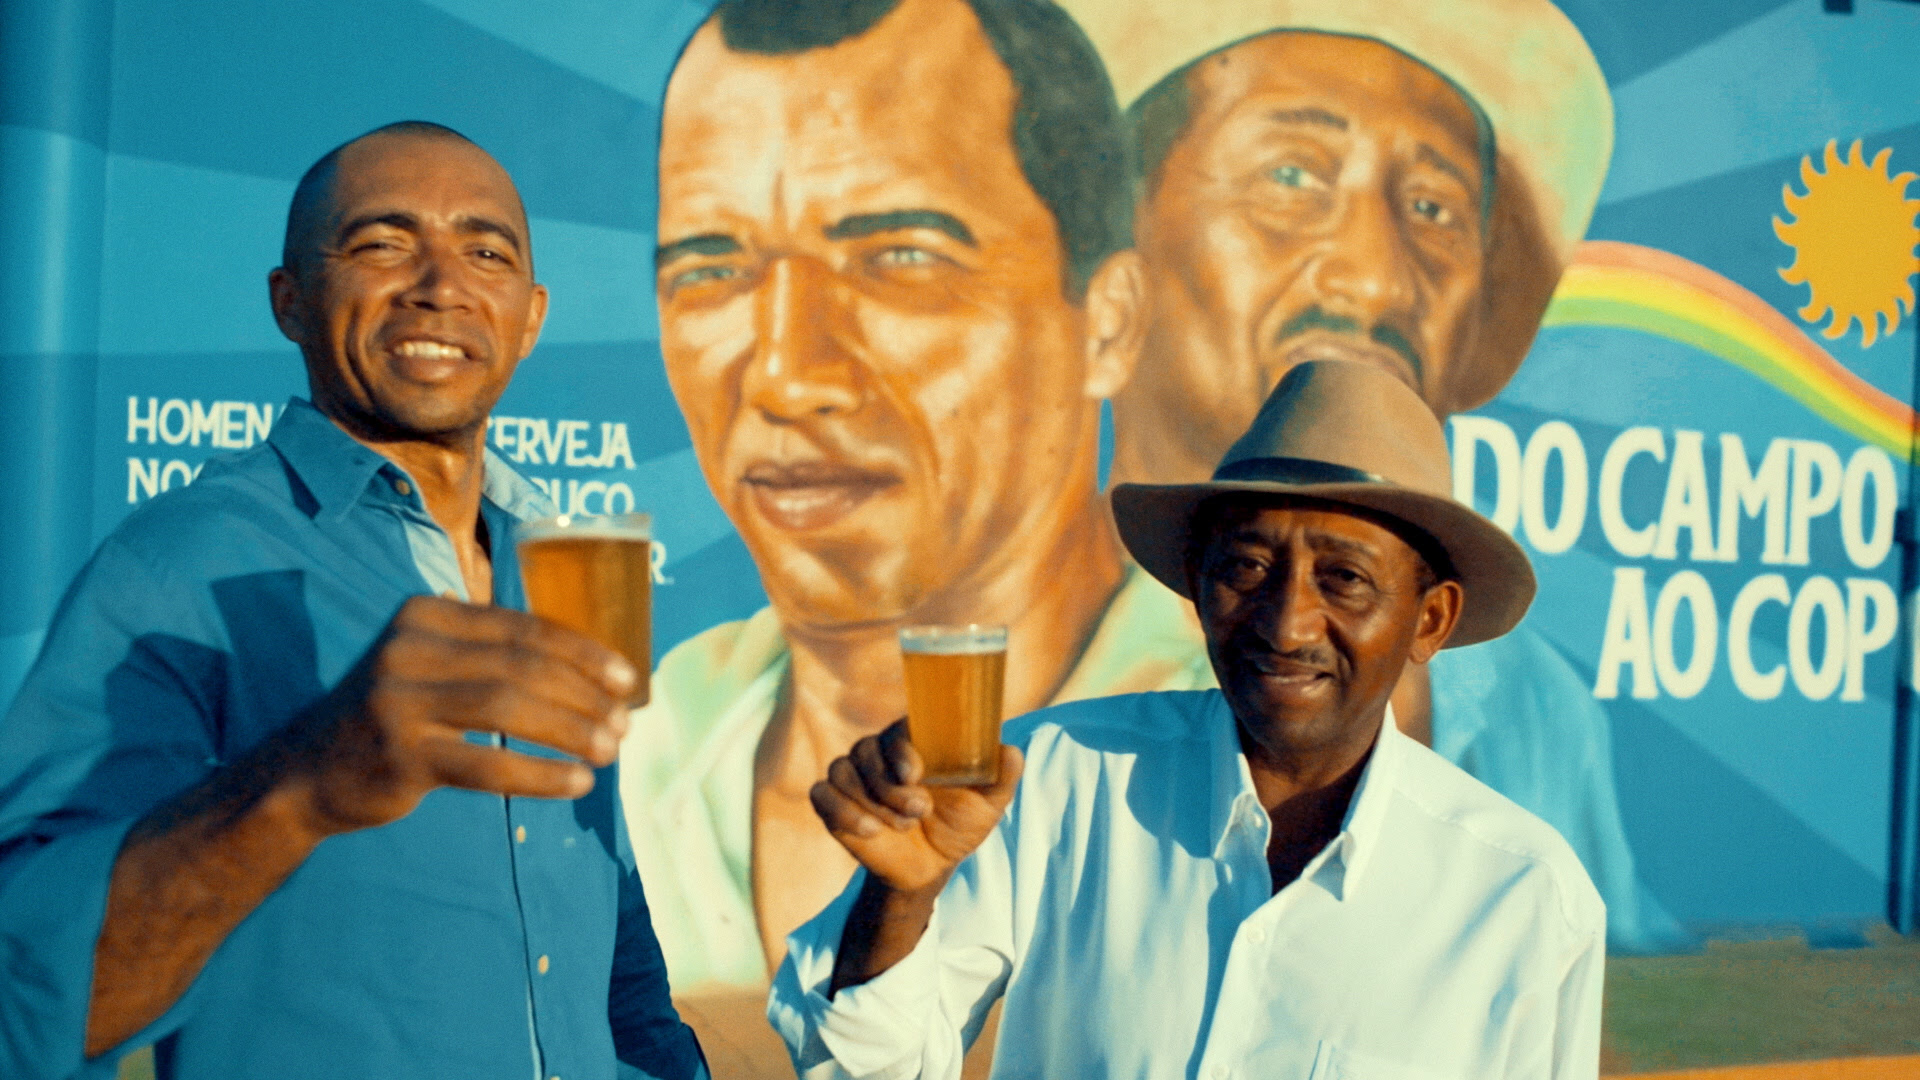 Cerveja Nossa presta homenagem aos agricultores de Araripina